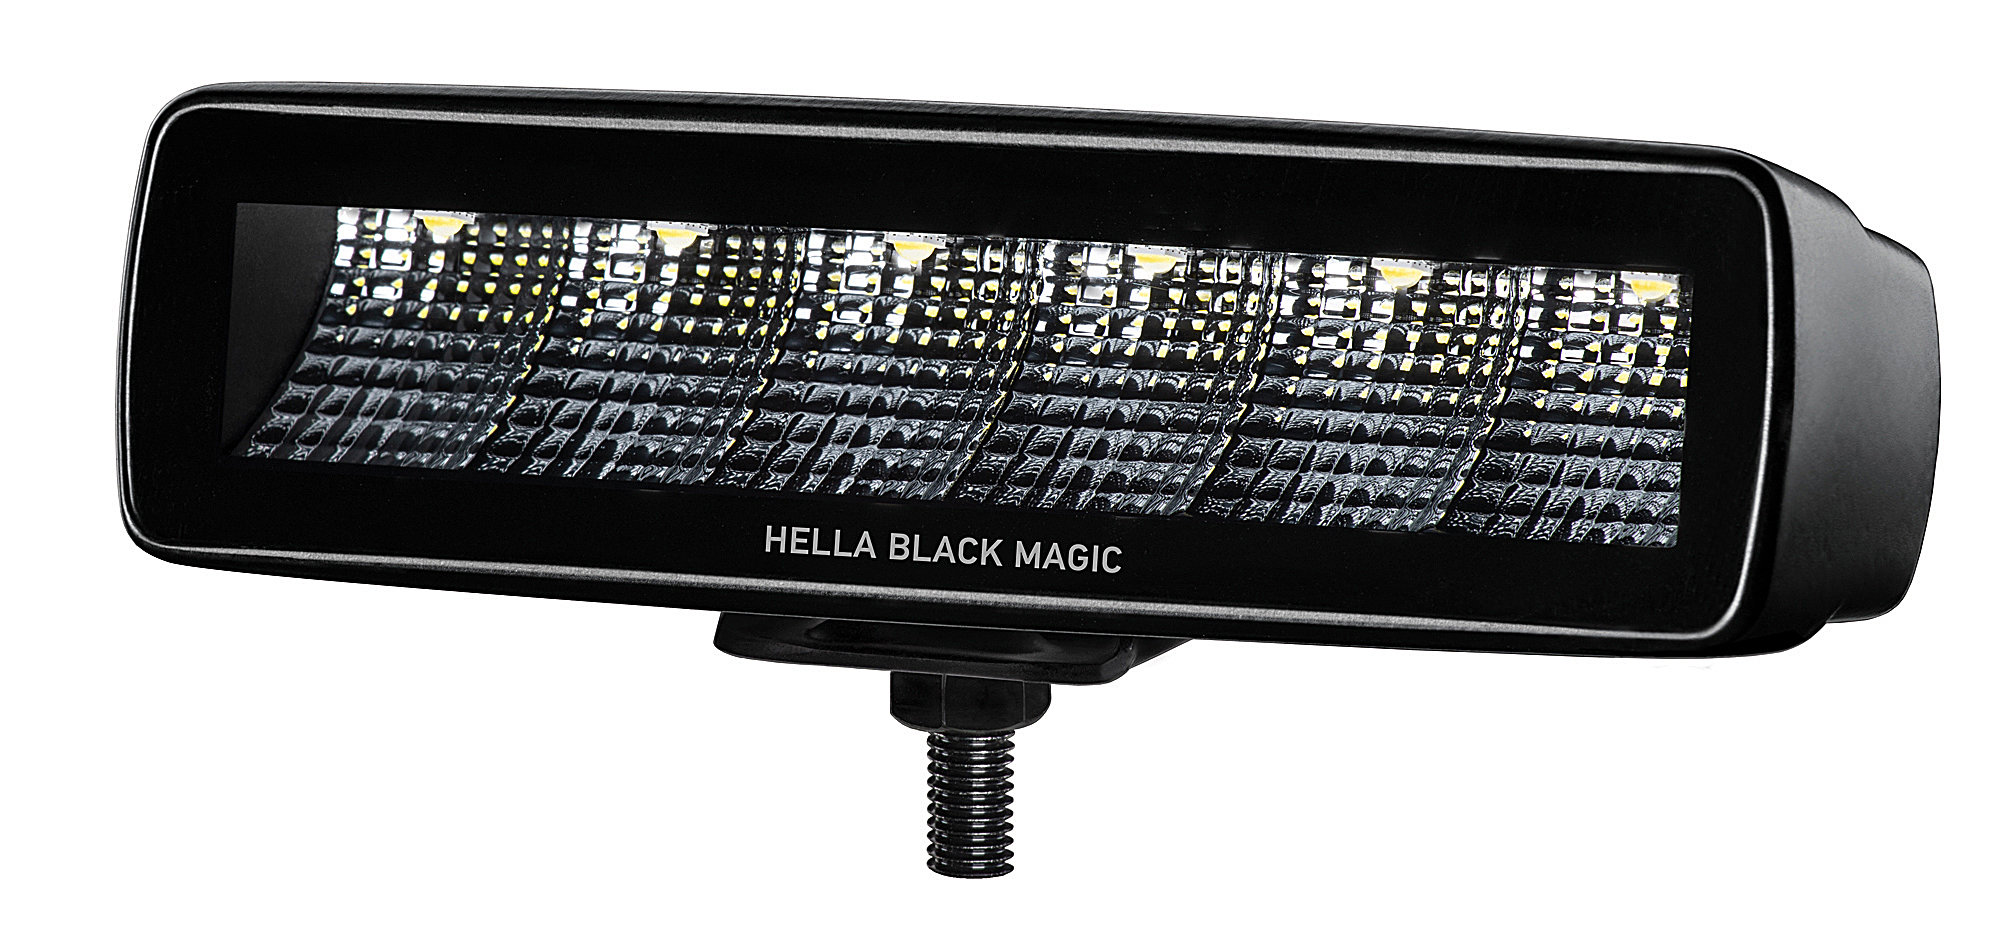 Hella Black Magic 6-LED Mini Light Bar